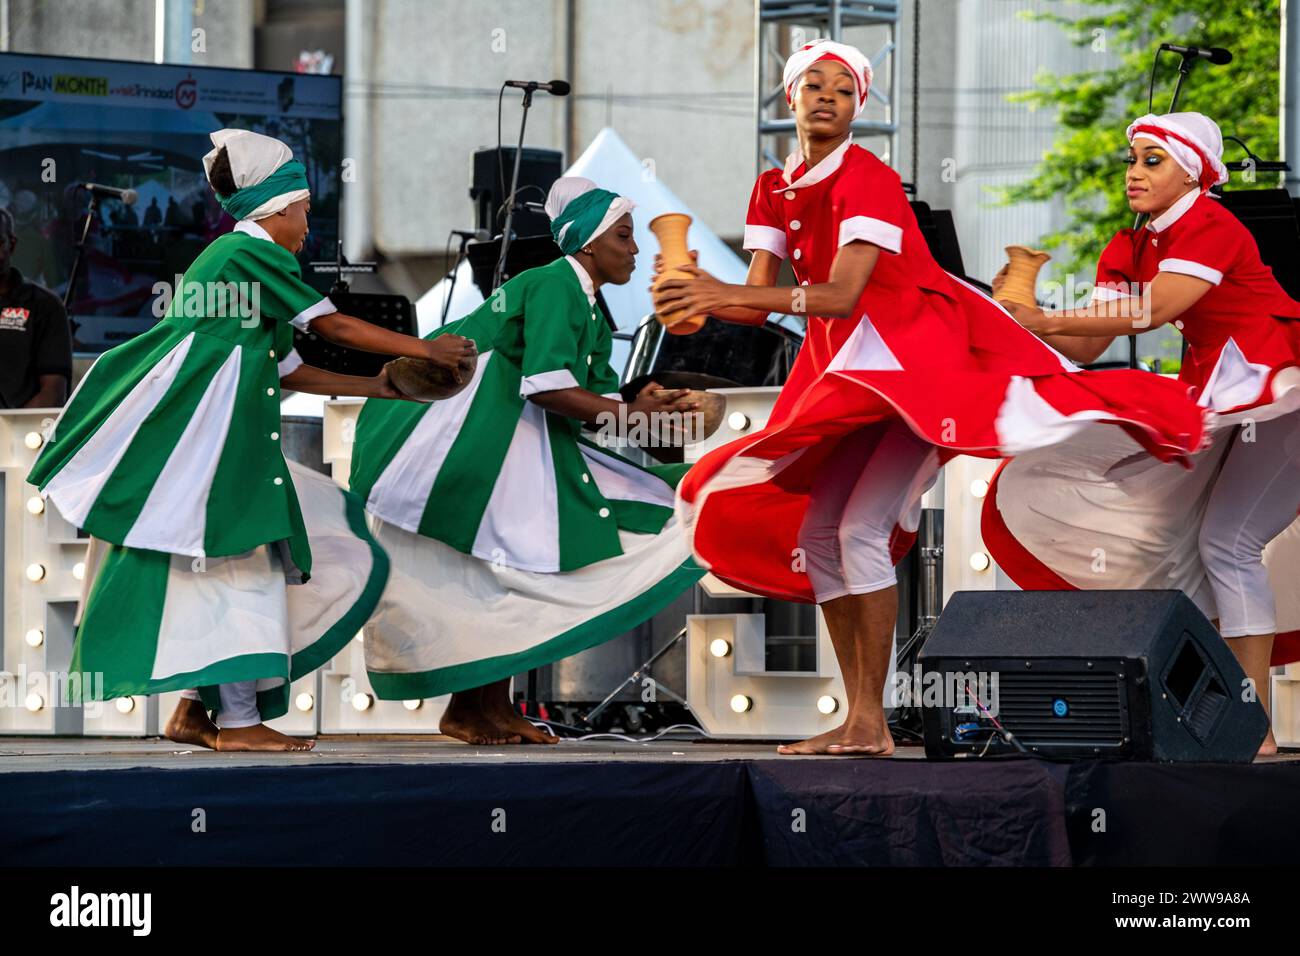 Danseurs traditionnels se produisant au festival mondial de la PAN Day à Port of Spain Trinité-et-Tobago Banque D'Images